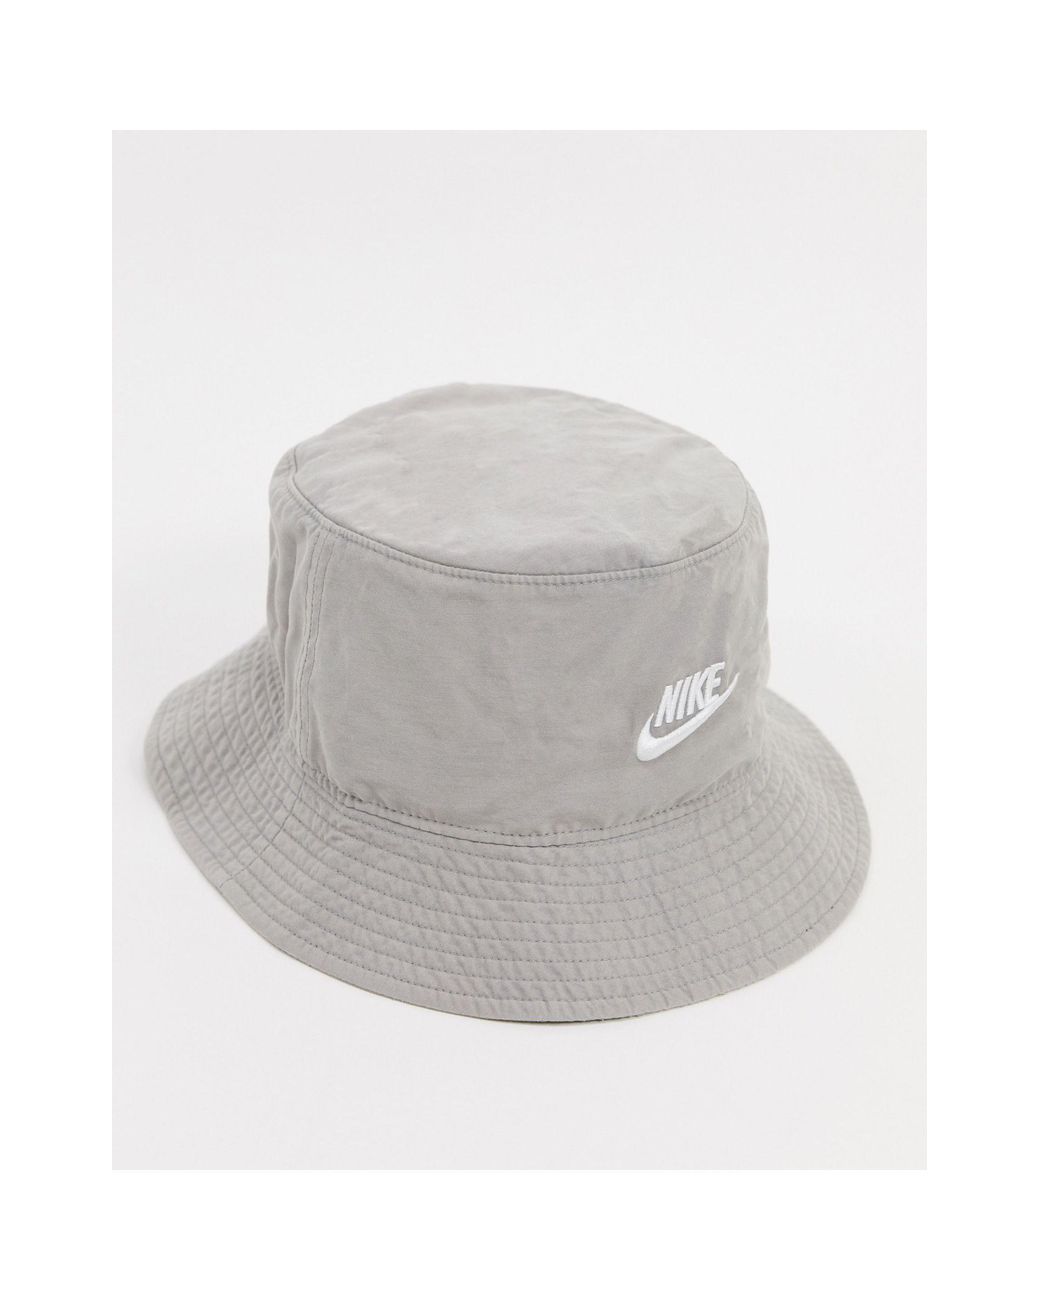 Nike Bucket Hat in Dusty Grey (Grey) for Men | Lyst Australia